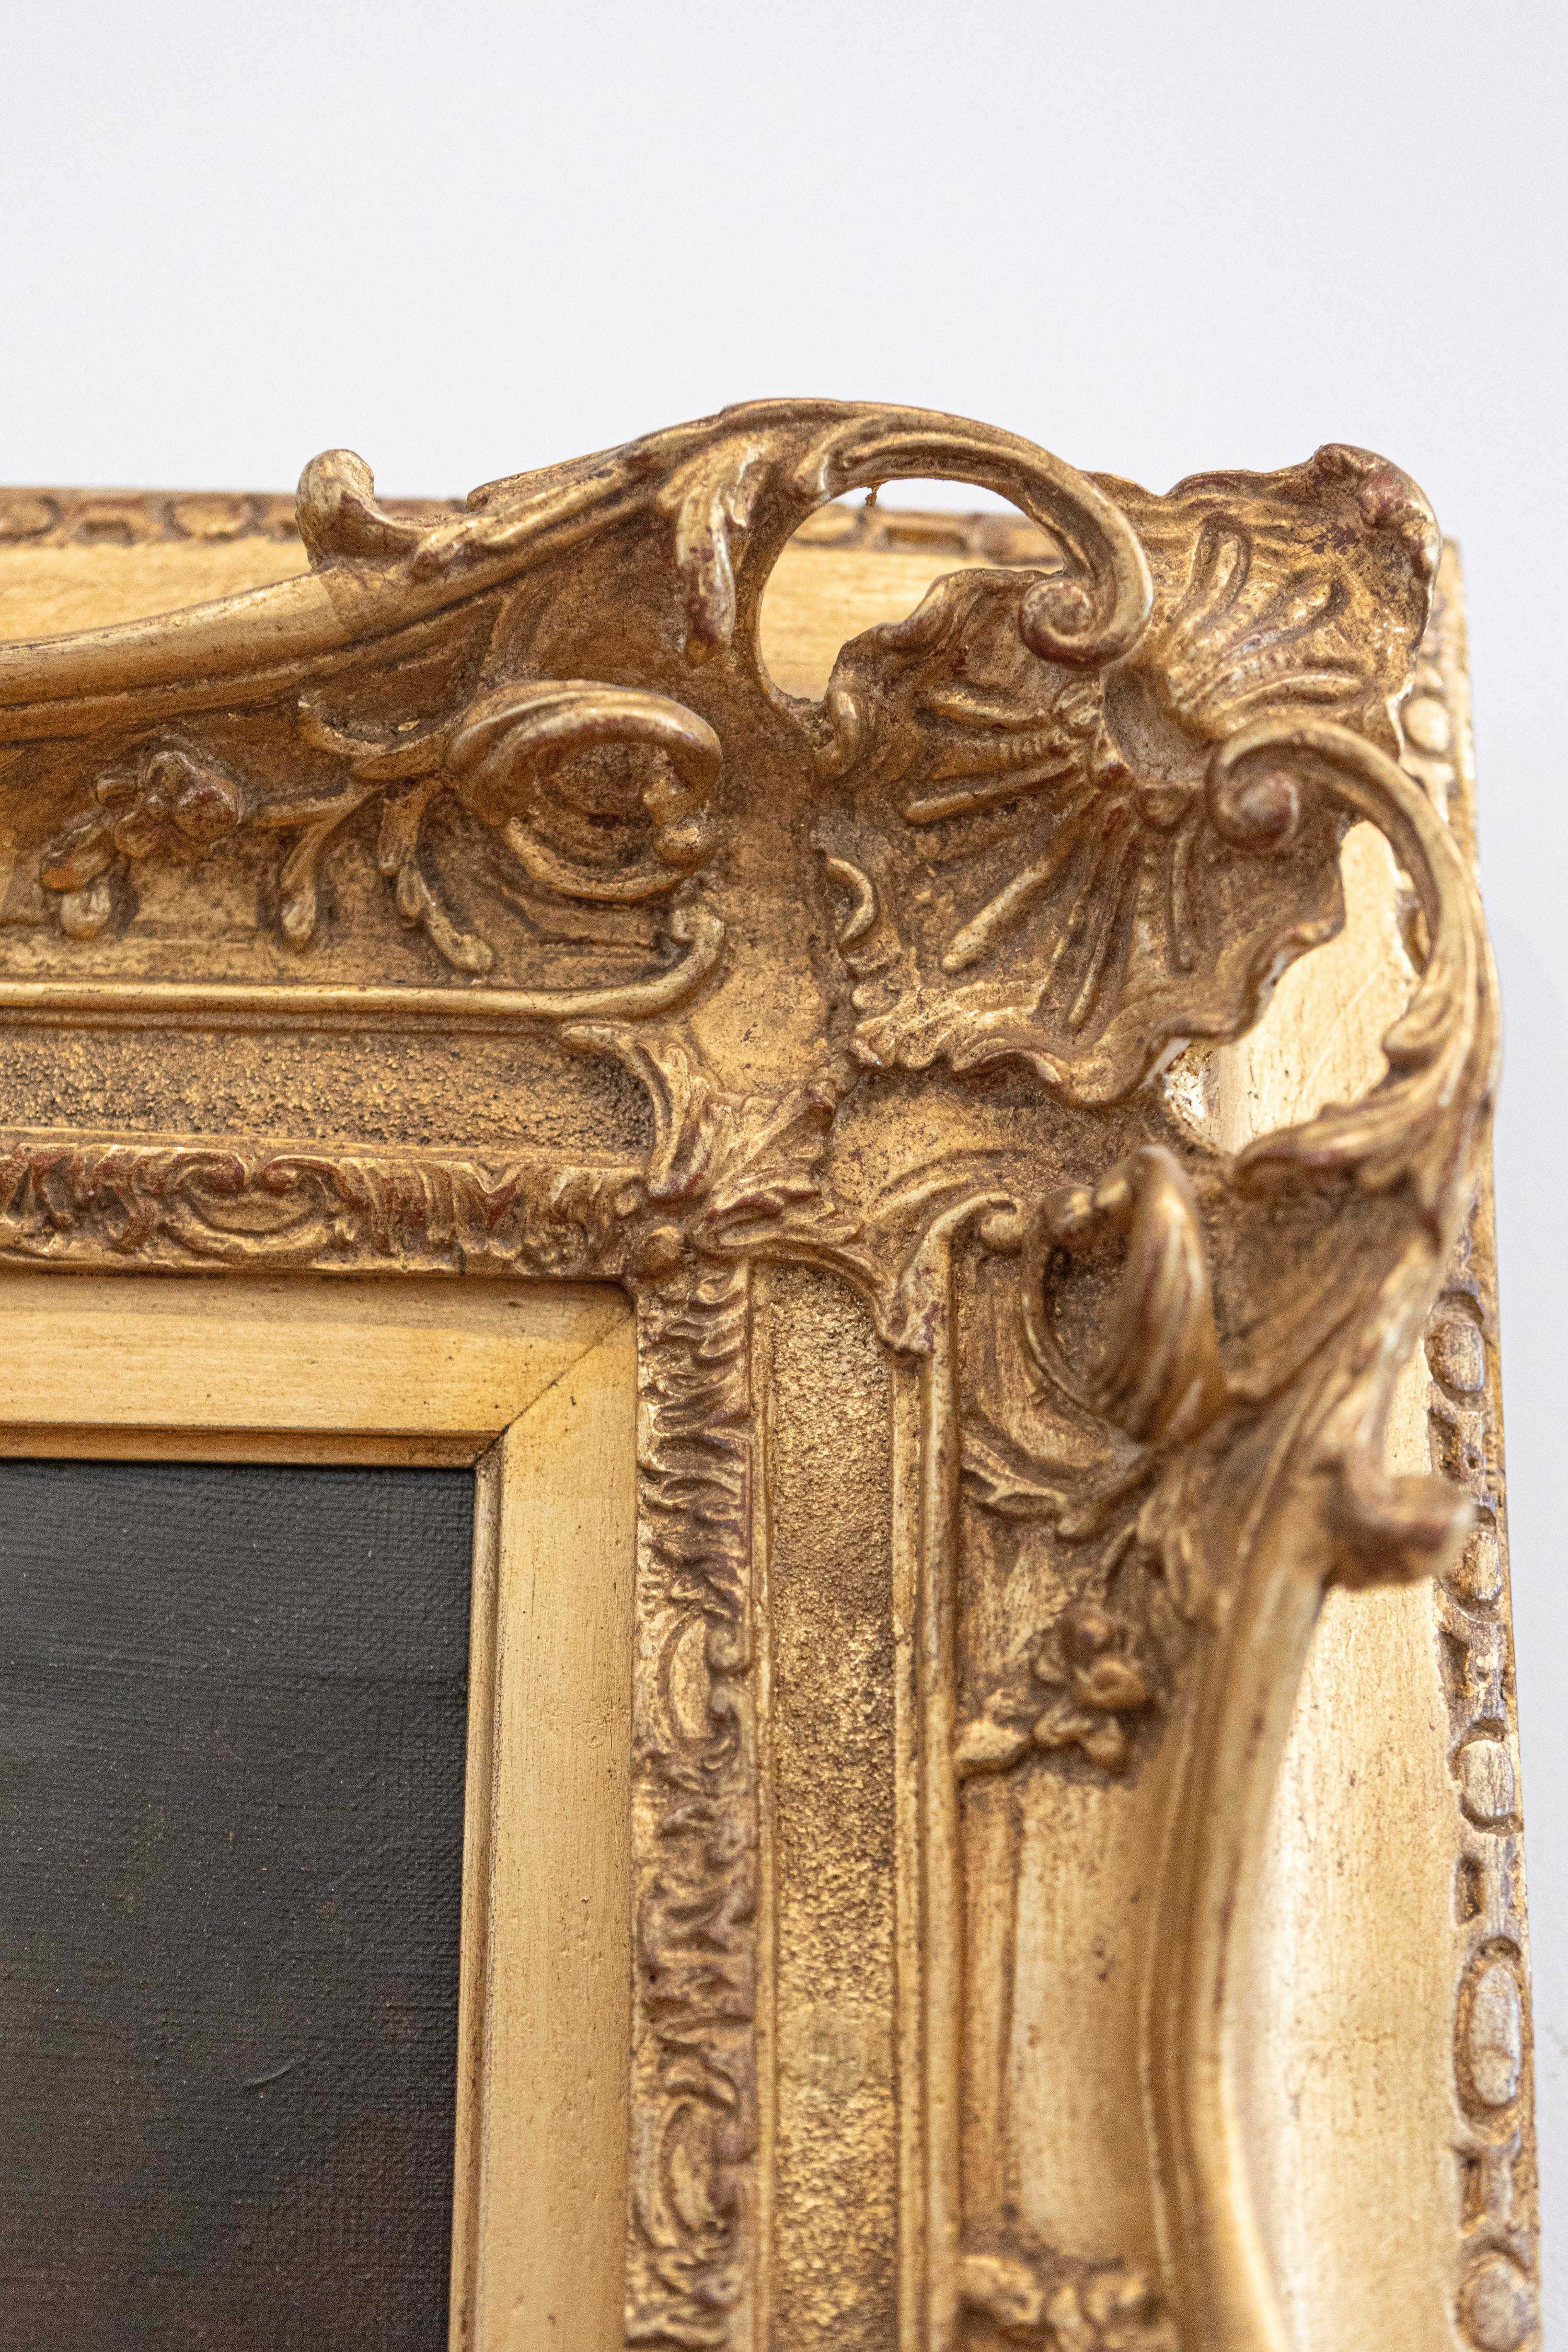 Bois doré Nature morte française des années 1870 d'époque Napoléon III avec cadre sculpté en bois doré en vente